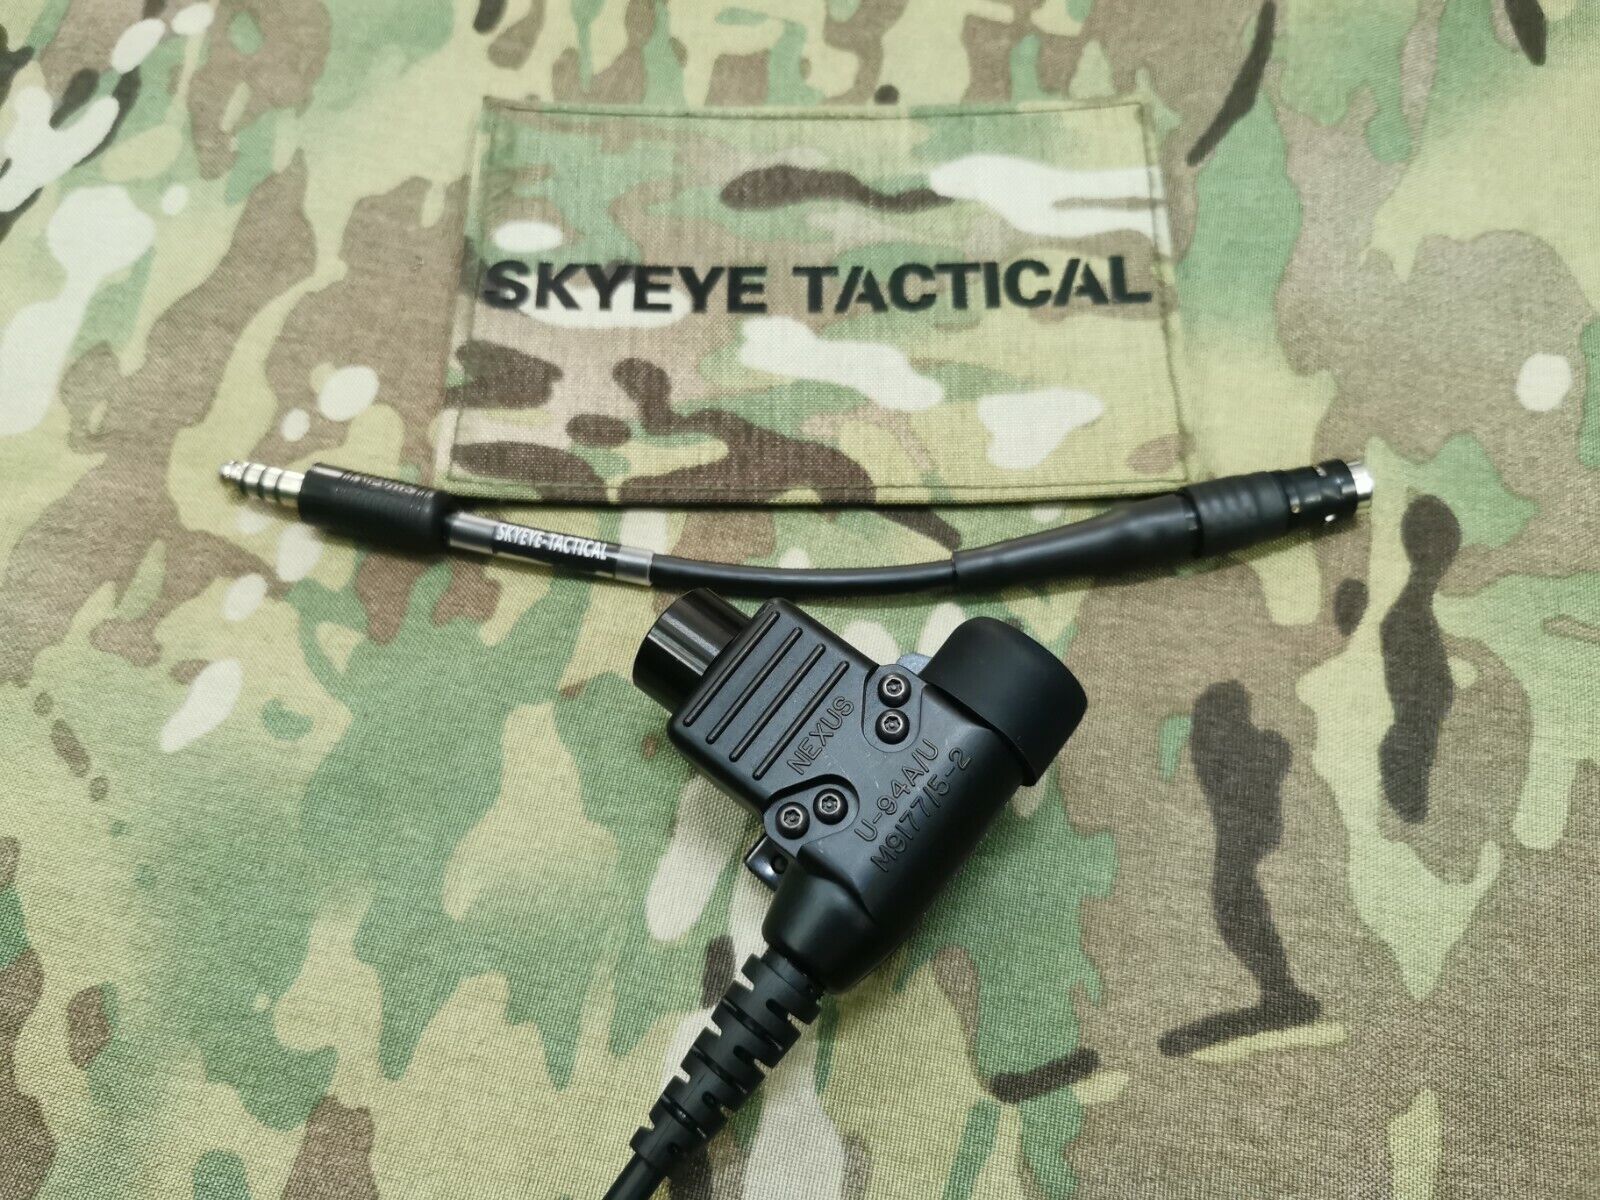 SKYEYE Tactical Sordin 6 Pin LEMO Adatper w/ ST-94V2 Amplified PTT Combo Package